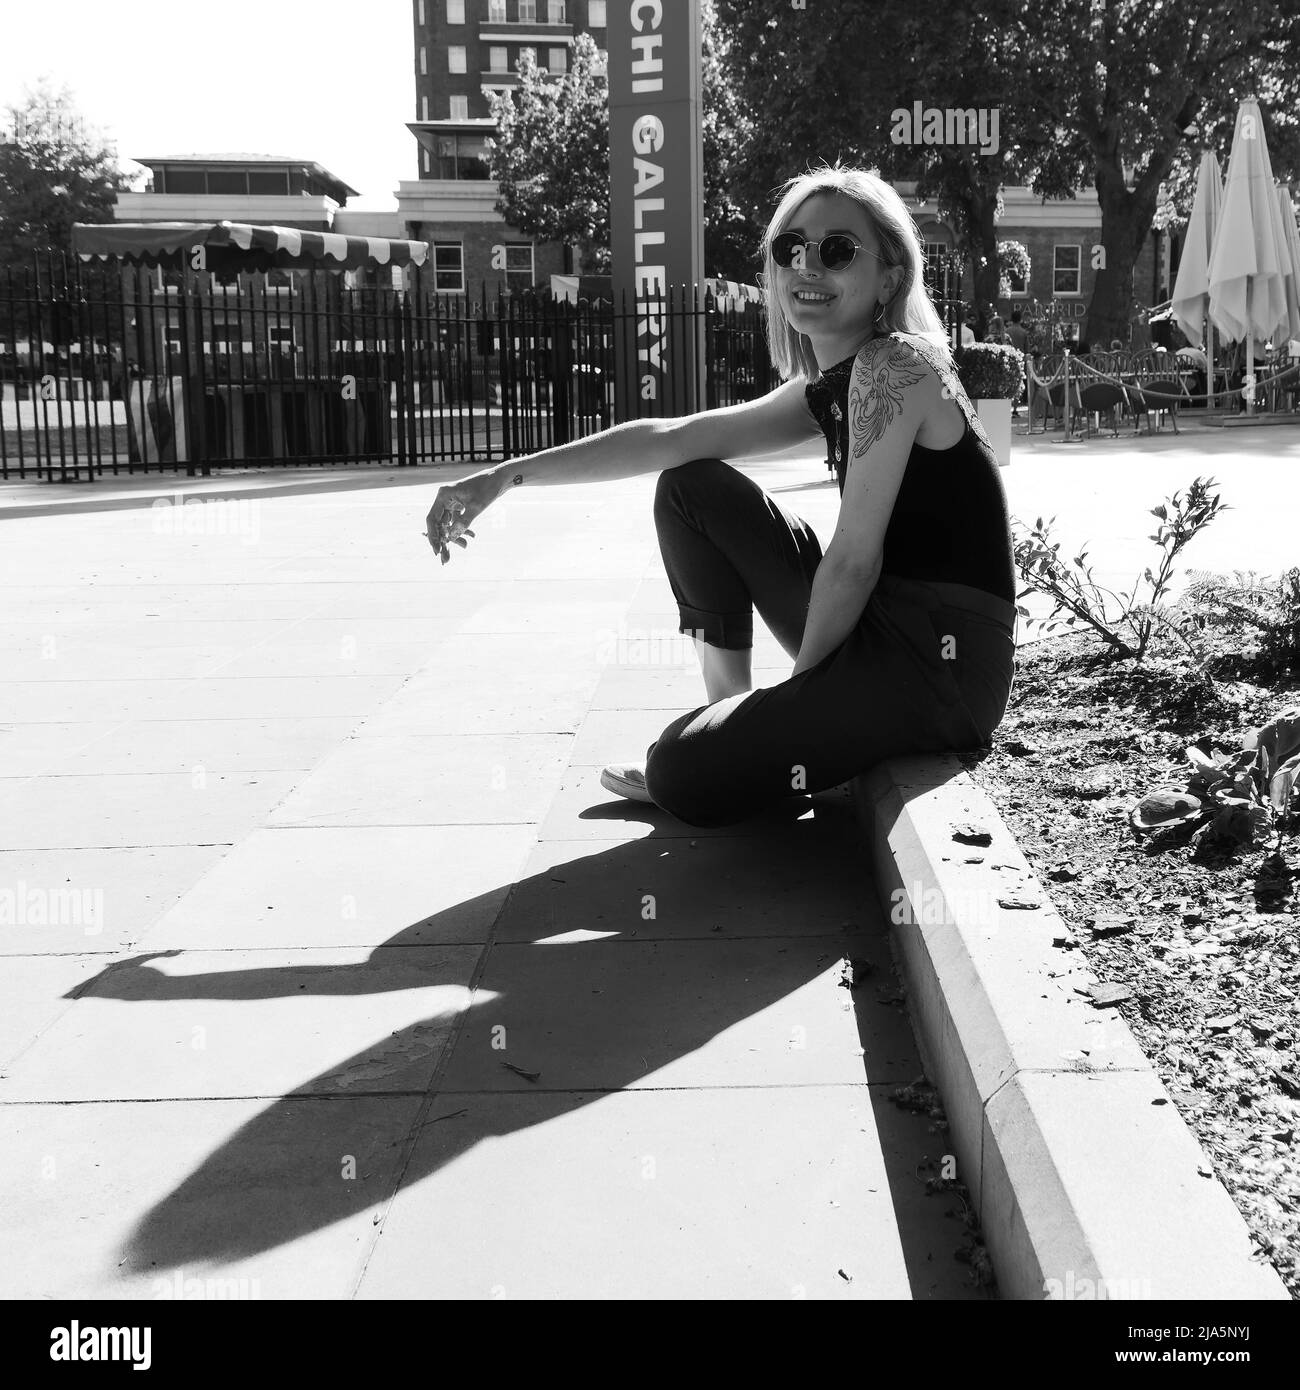 Jolie dame avec des tatouages, le perçage du nez et des lunettes de soleil se trouve sur une pierre de trottoir, sourit et fume. Duke of York Square, Chelsea, Londres. Monochrome. Banque D'Images